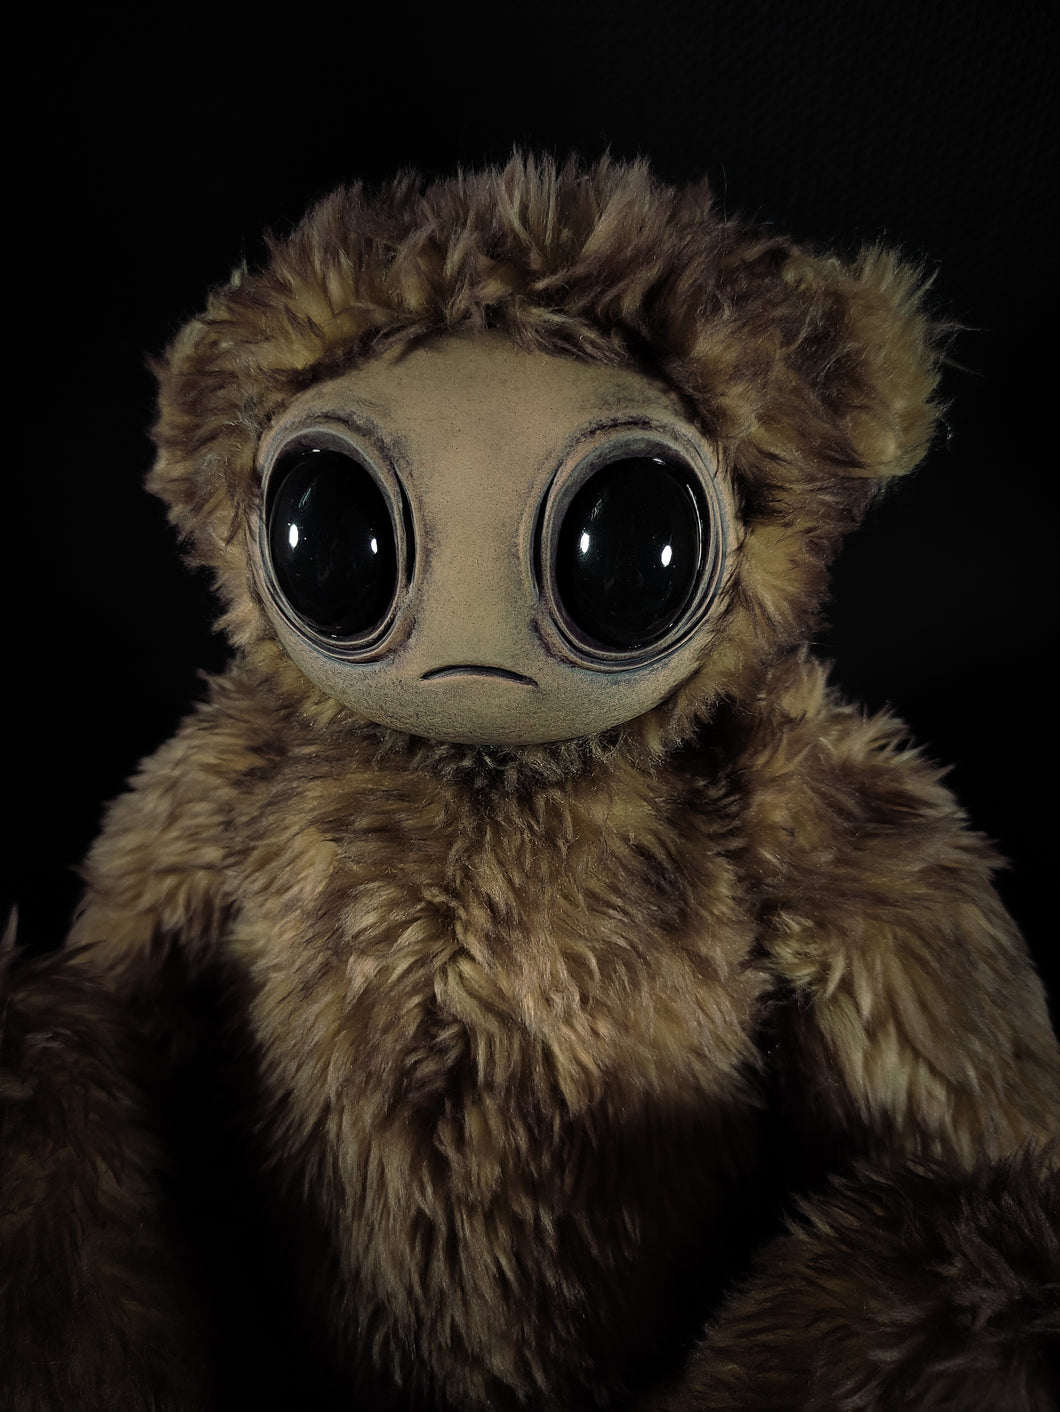 Meeporo (Auburn Titan Ver.) - Posable Monster Art Doll Plush Toy